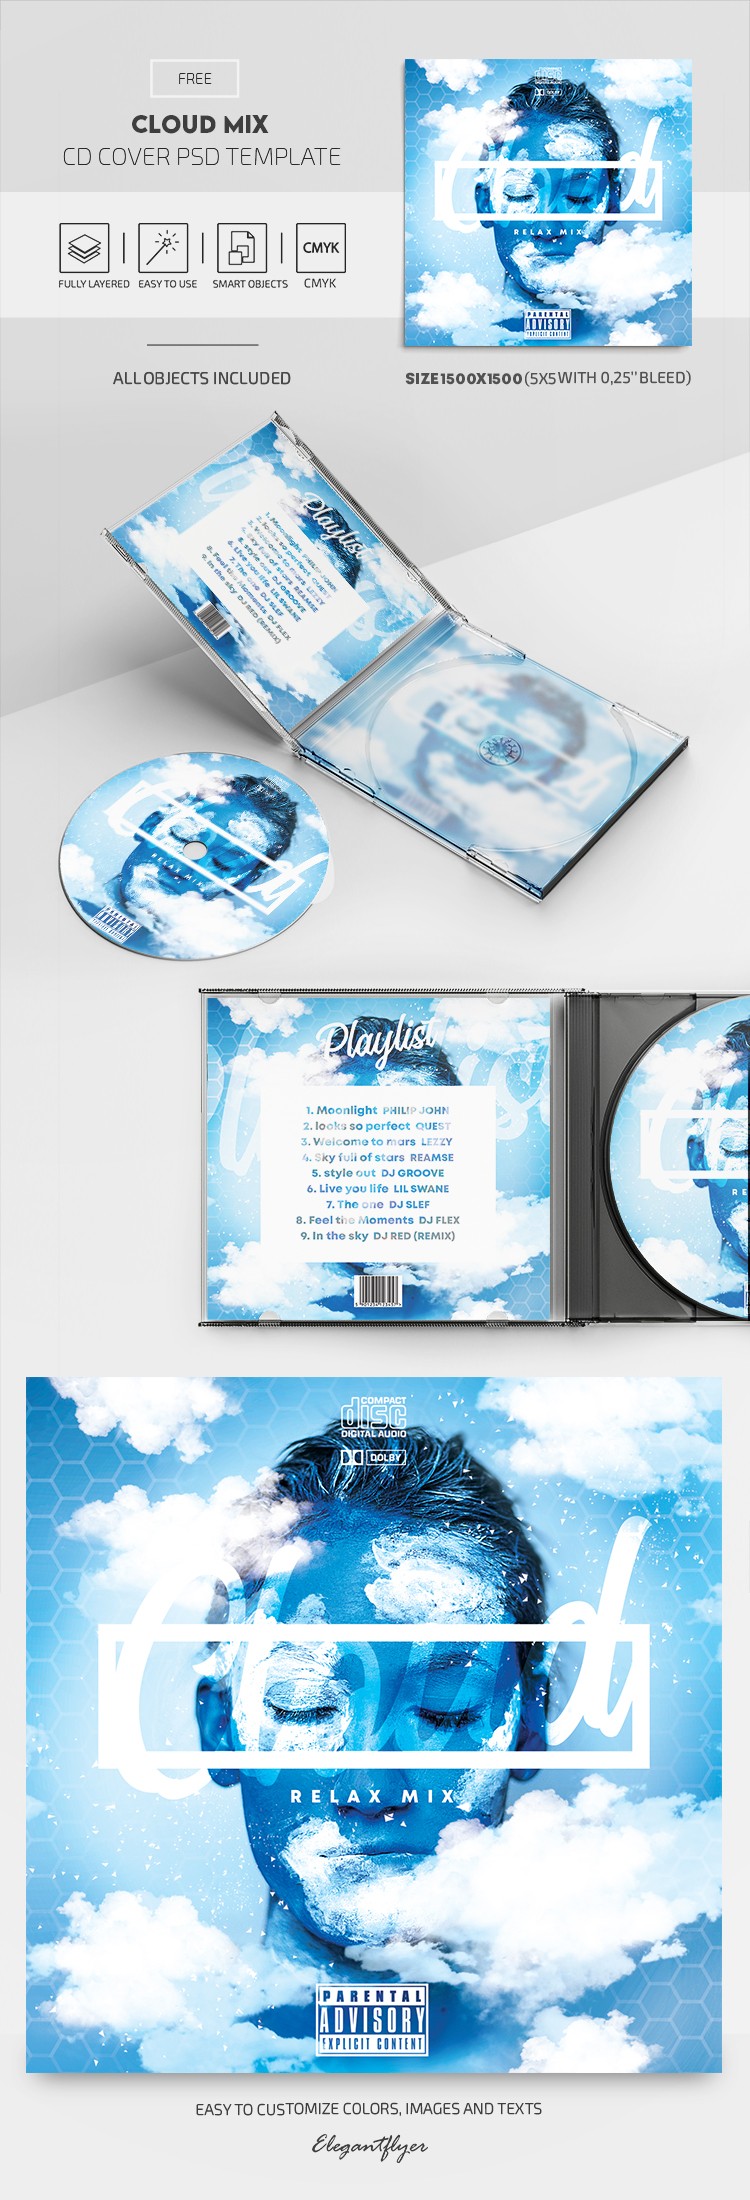 Couverture du CD Cloud Mix. by ElegantFlyer